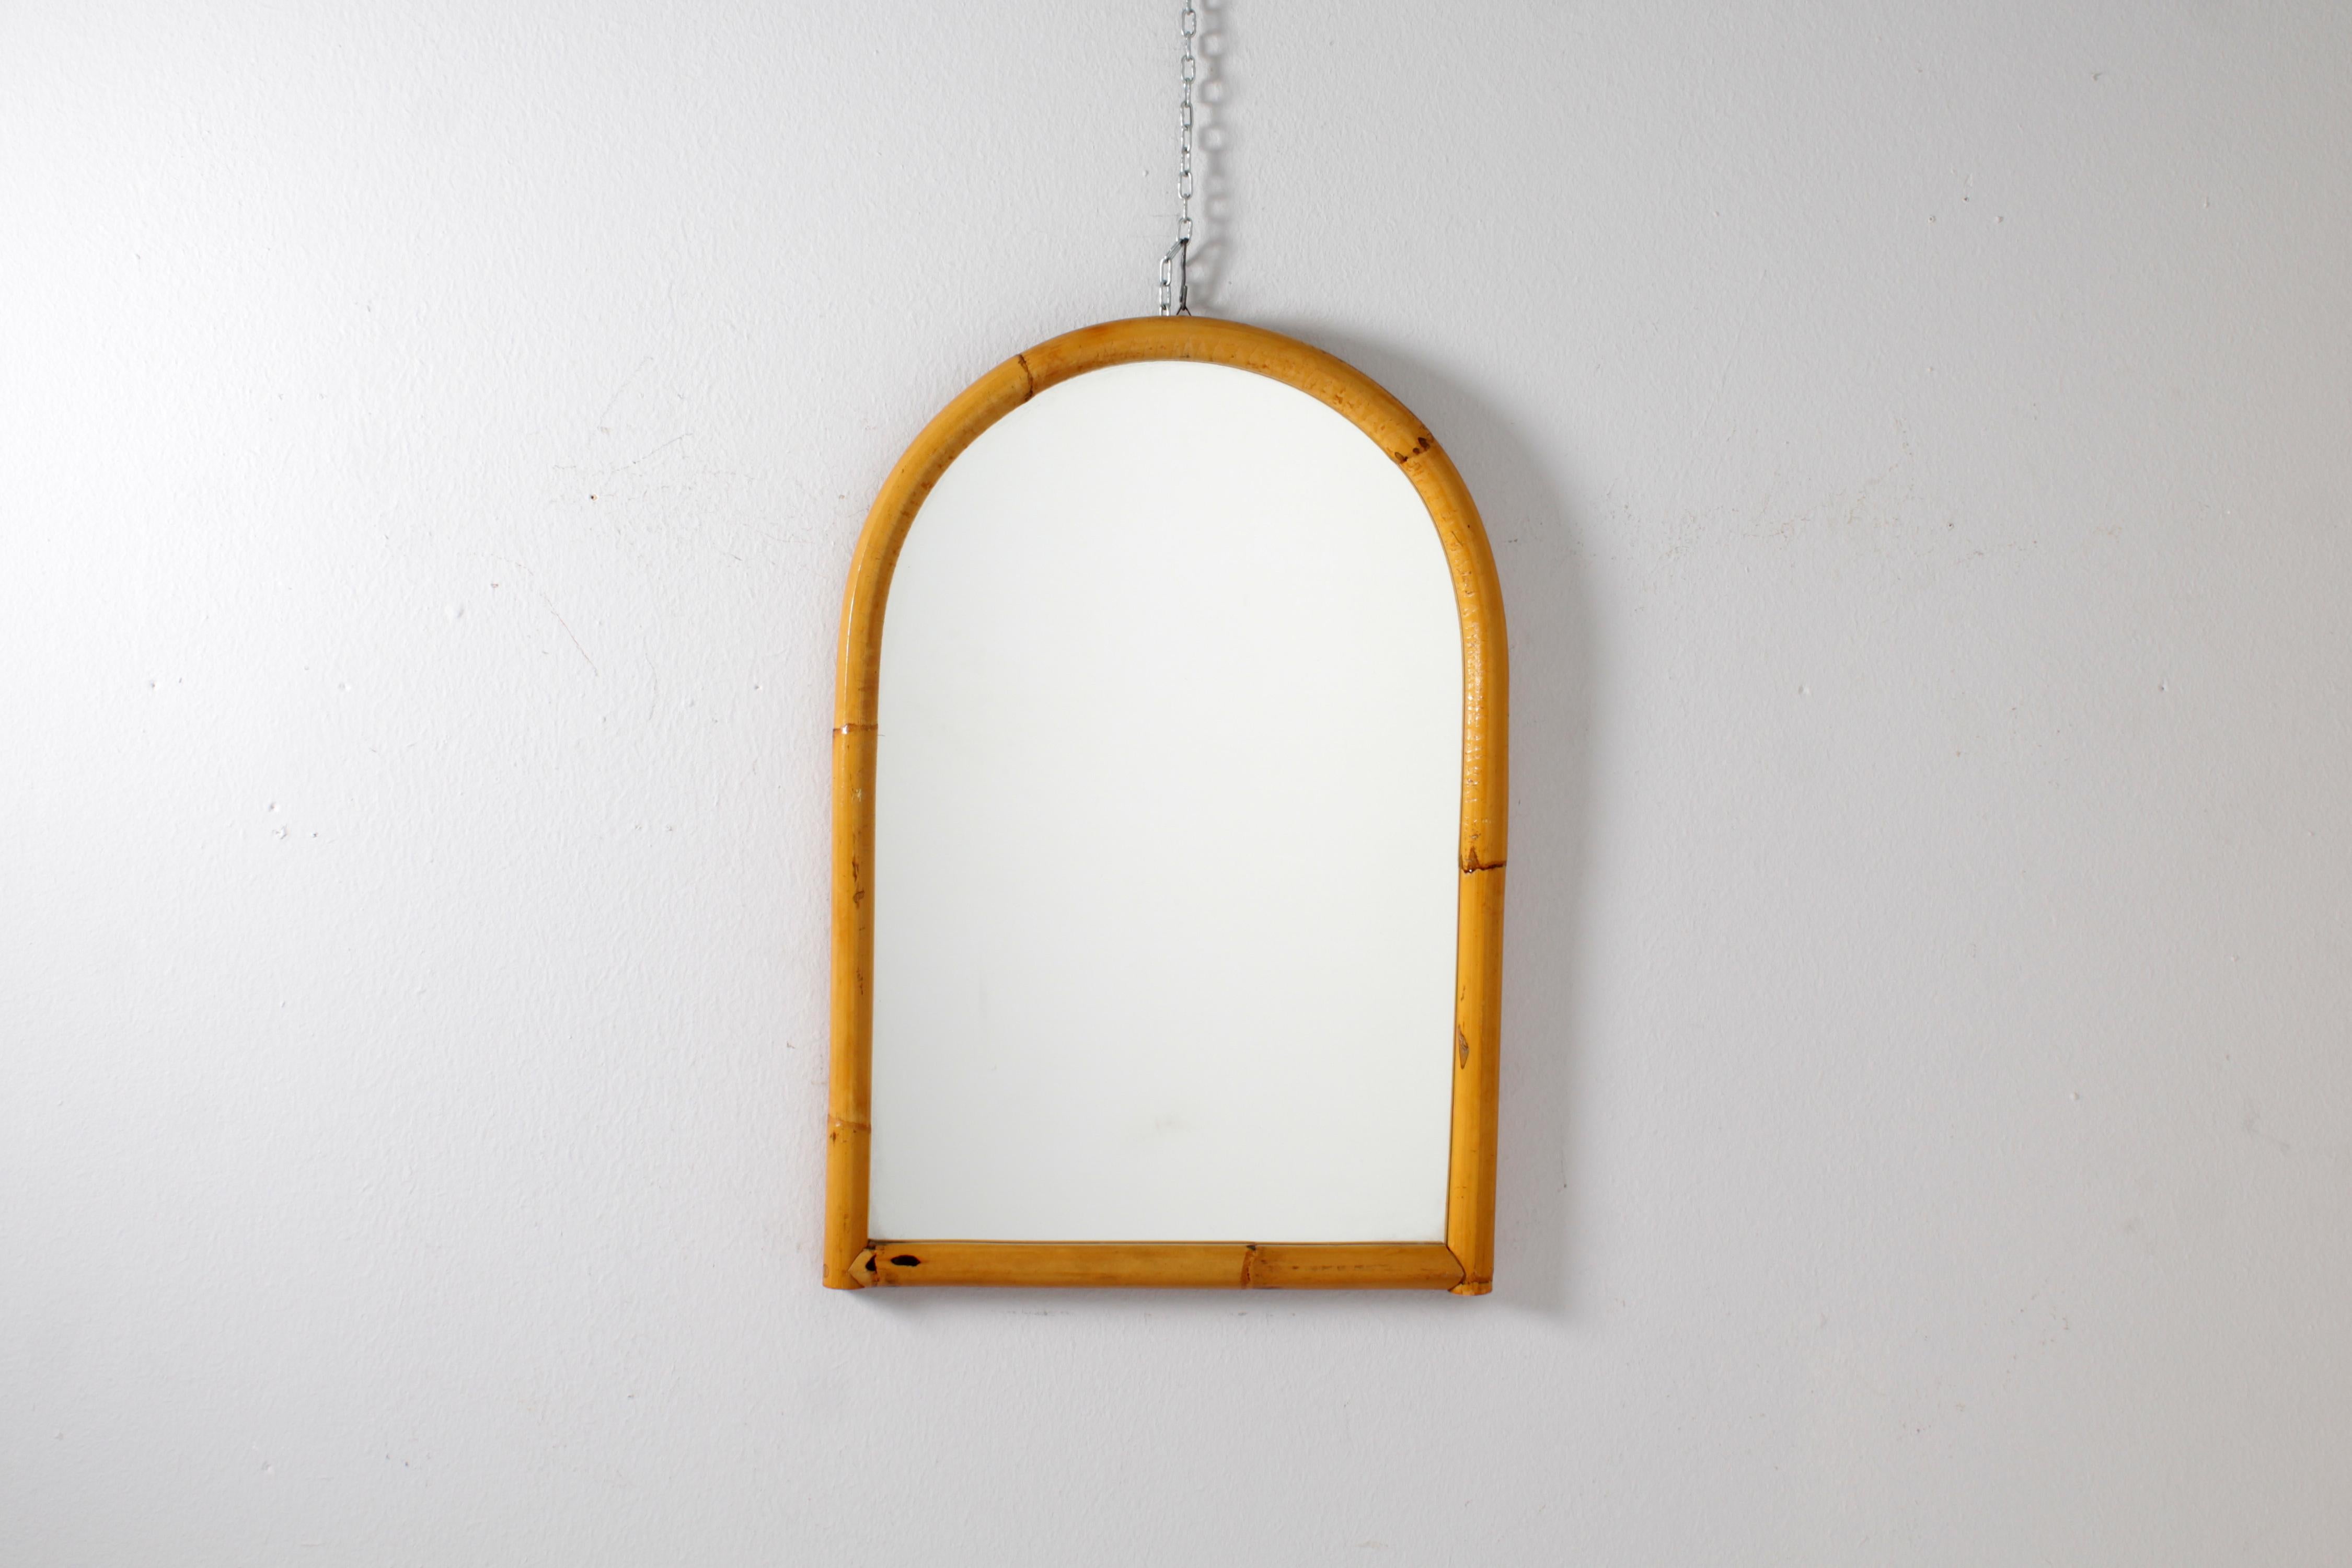 Italian Mid-Century Bonacina Style Bamboo Cane Arched Wall Mirror, 60s Italy